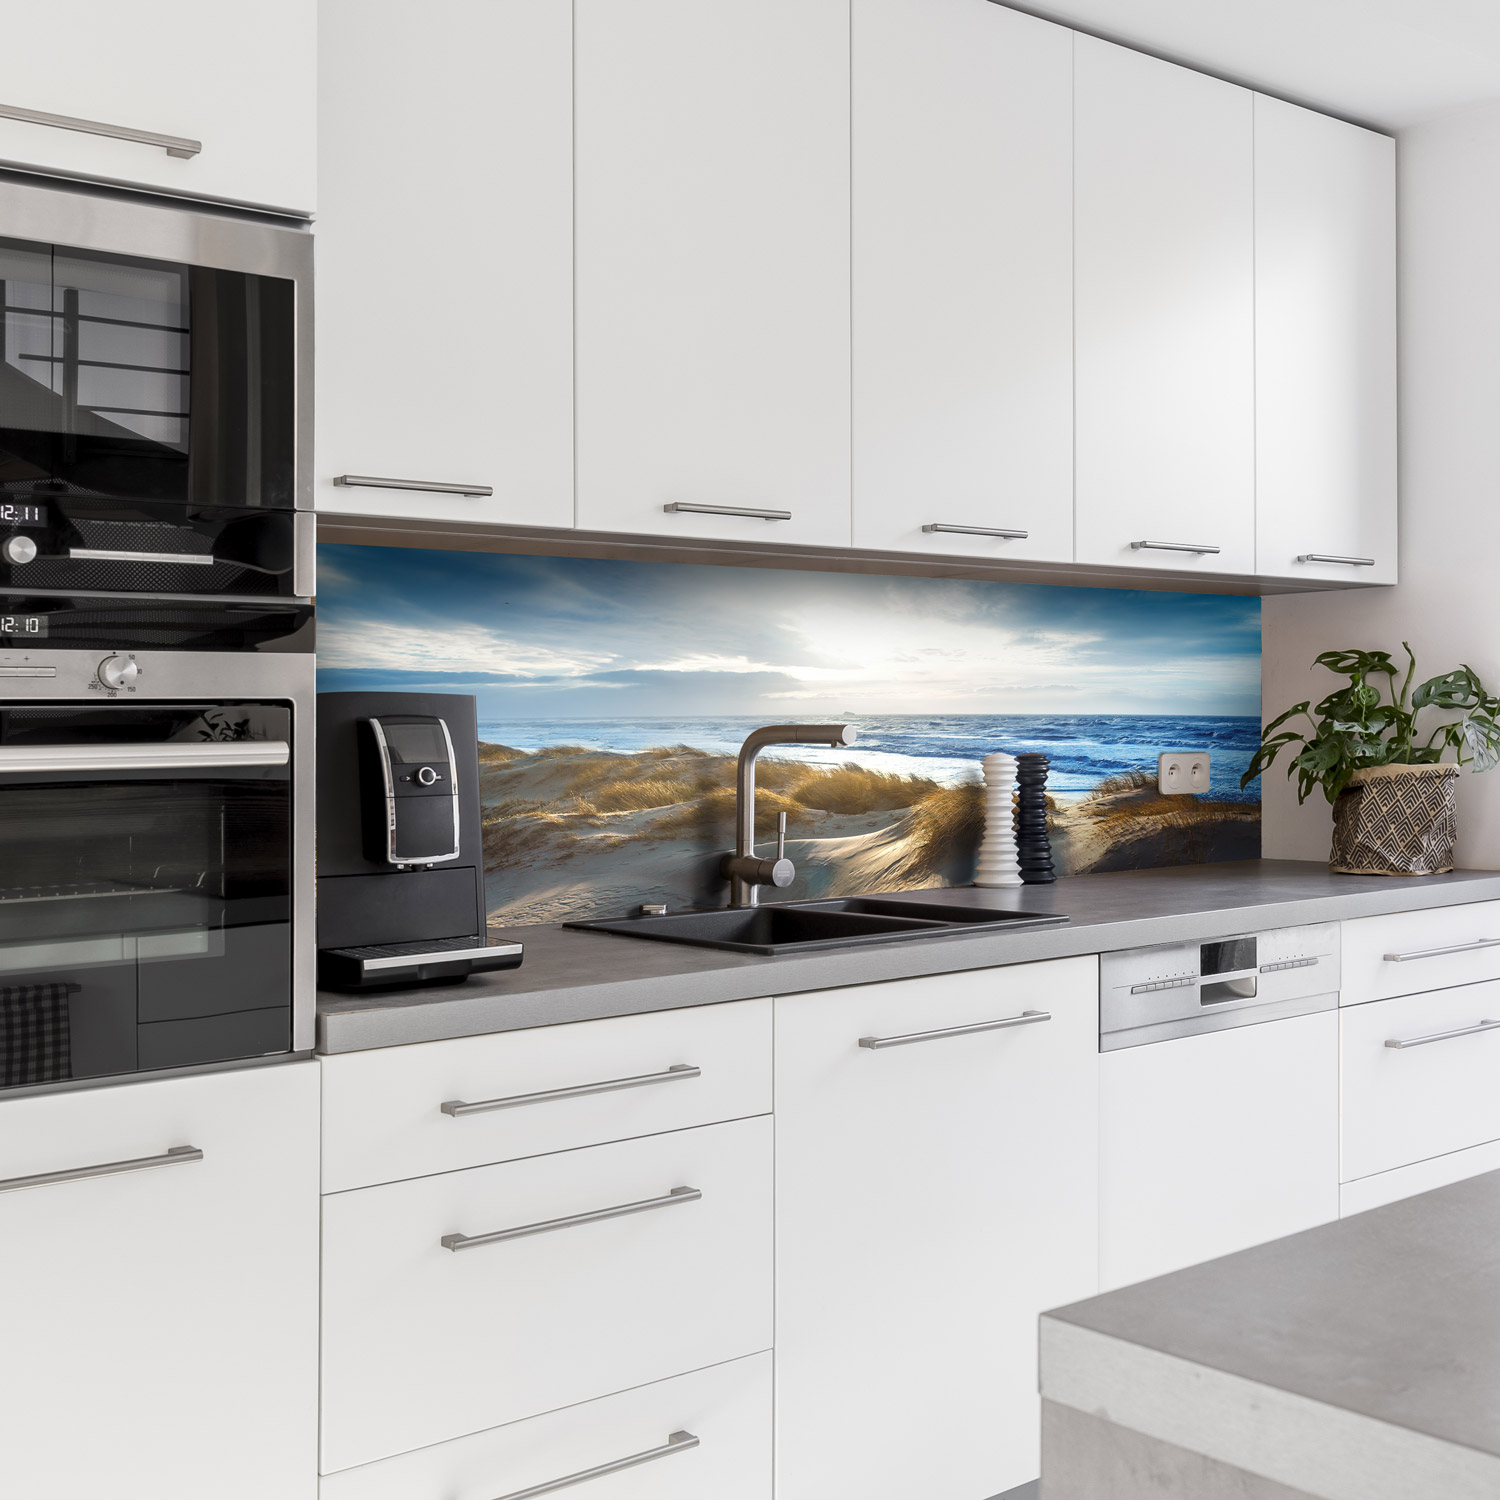 Küchenrückwand mit Dünengras V3 Motiv als Fliesenersatz und Spritzschutz